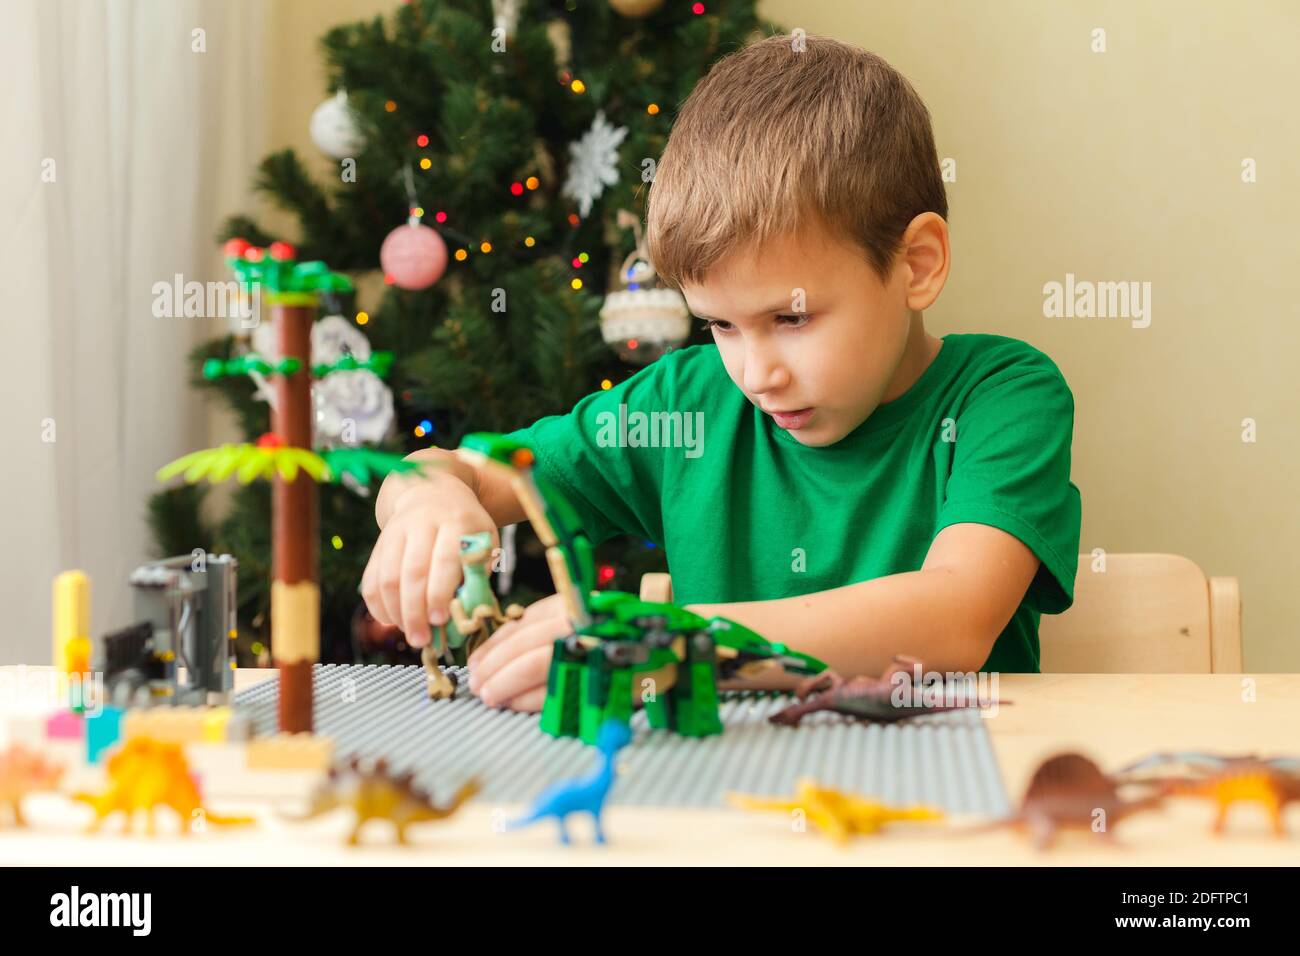 SAINT-PETERSBURG, RUSSLAND - NOVEMBER 29, 2020 Boy baute eine jurassic Welt aus Plastikblöcken und spielt mit Spielzeug Dinosaurier. Weihnachtsbaum im Hintergrund. Bleiben Sie zu Hause für Weihnachtsferien Konzept Stockfoto